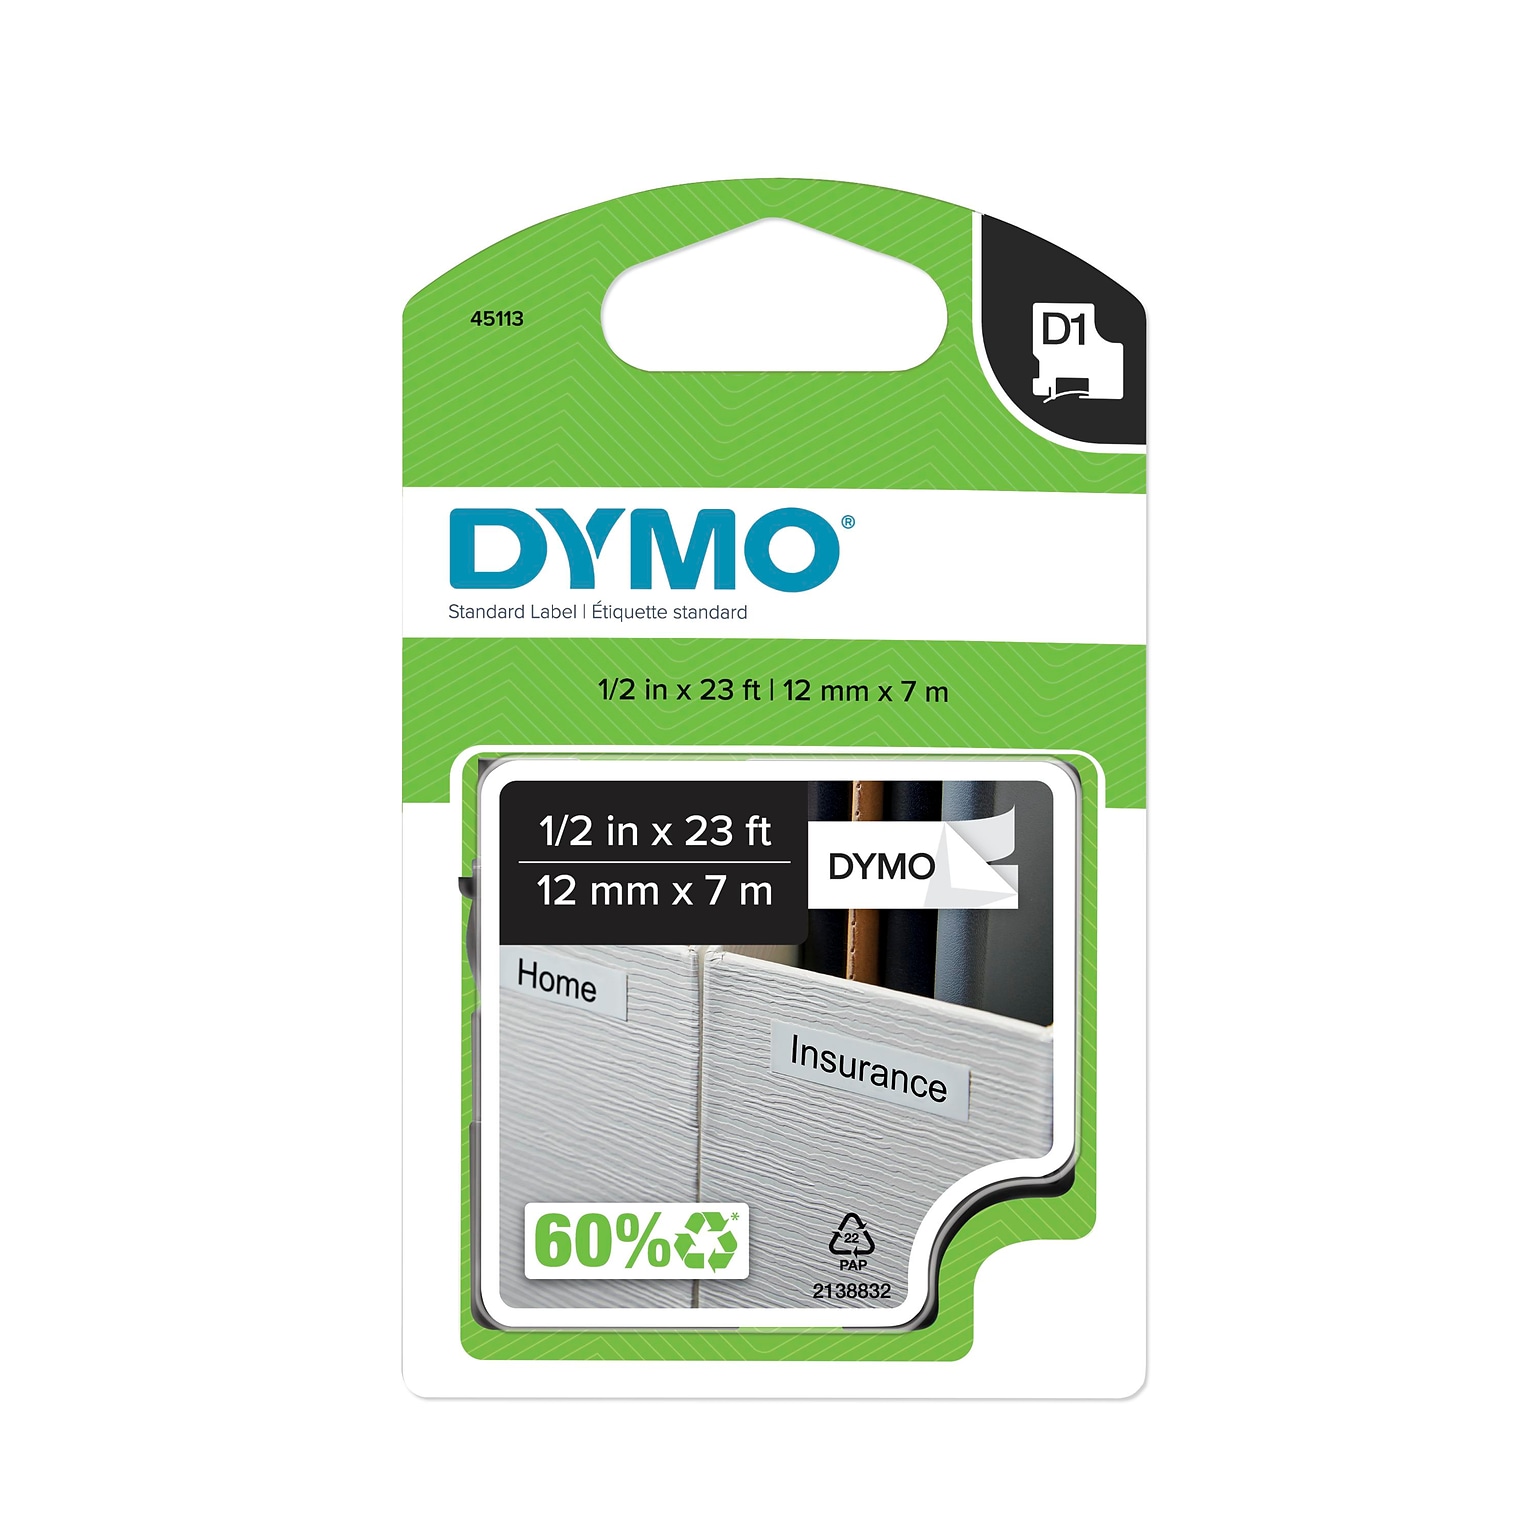 DYMO D1 Standard 45113 Label Maker Tape, 1/2 x 23, Black on White (45113)